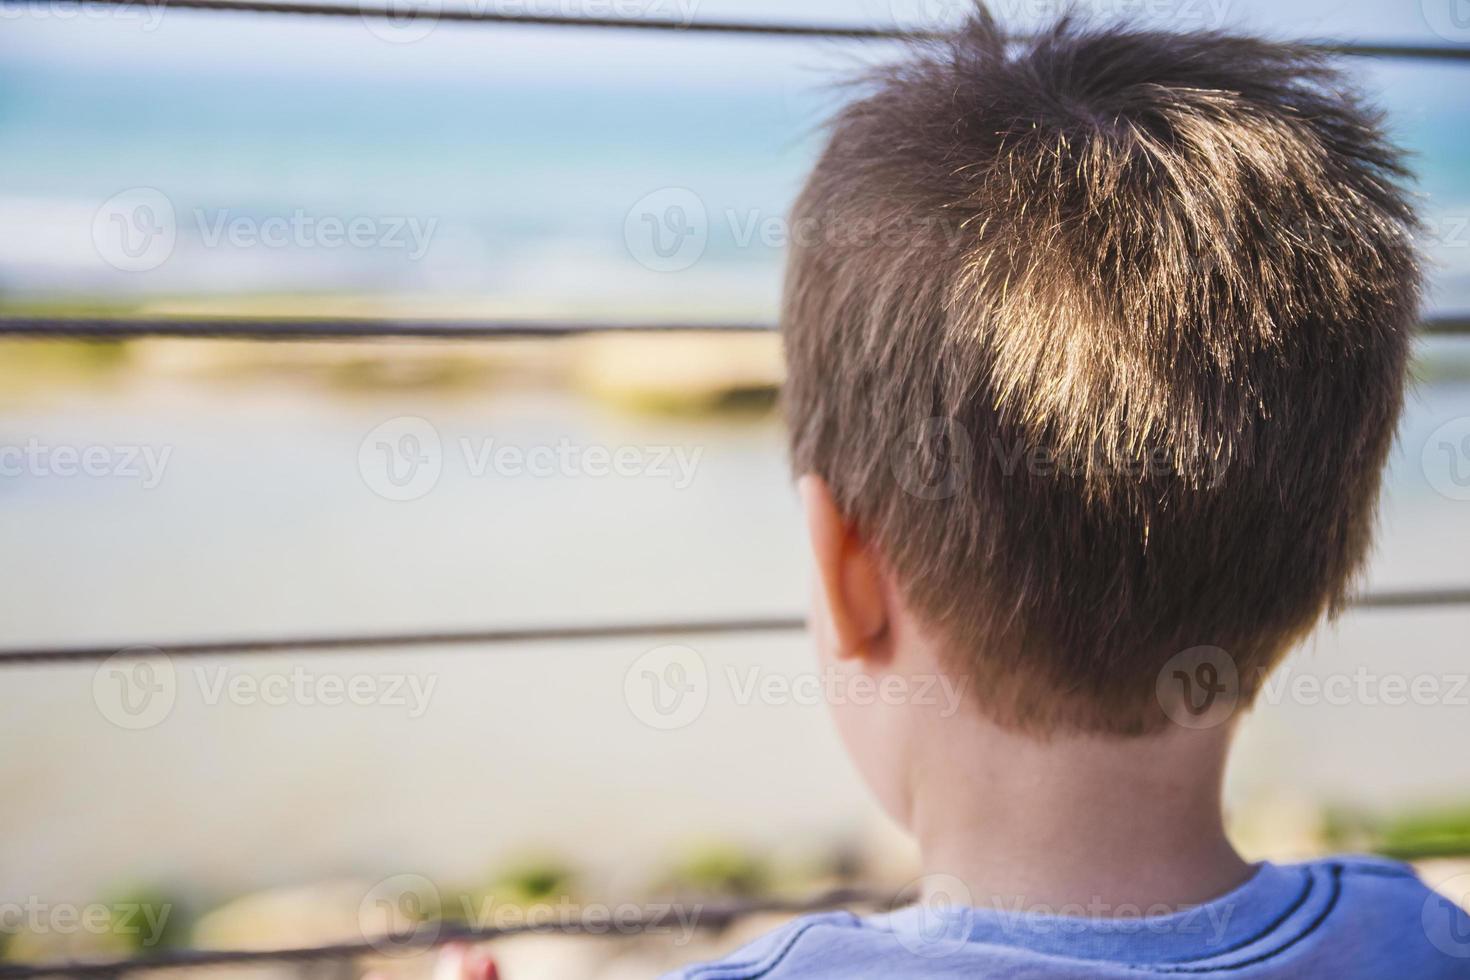 le jeune garçon regarde loin à l'horizon de derrière la barrière en métal photo